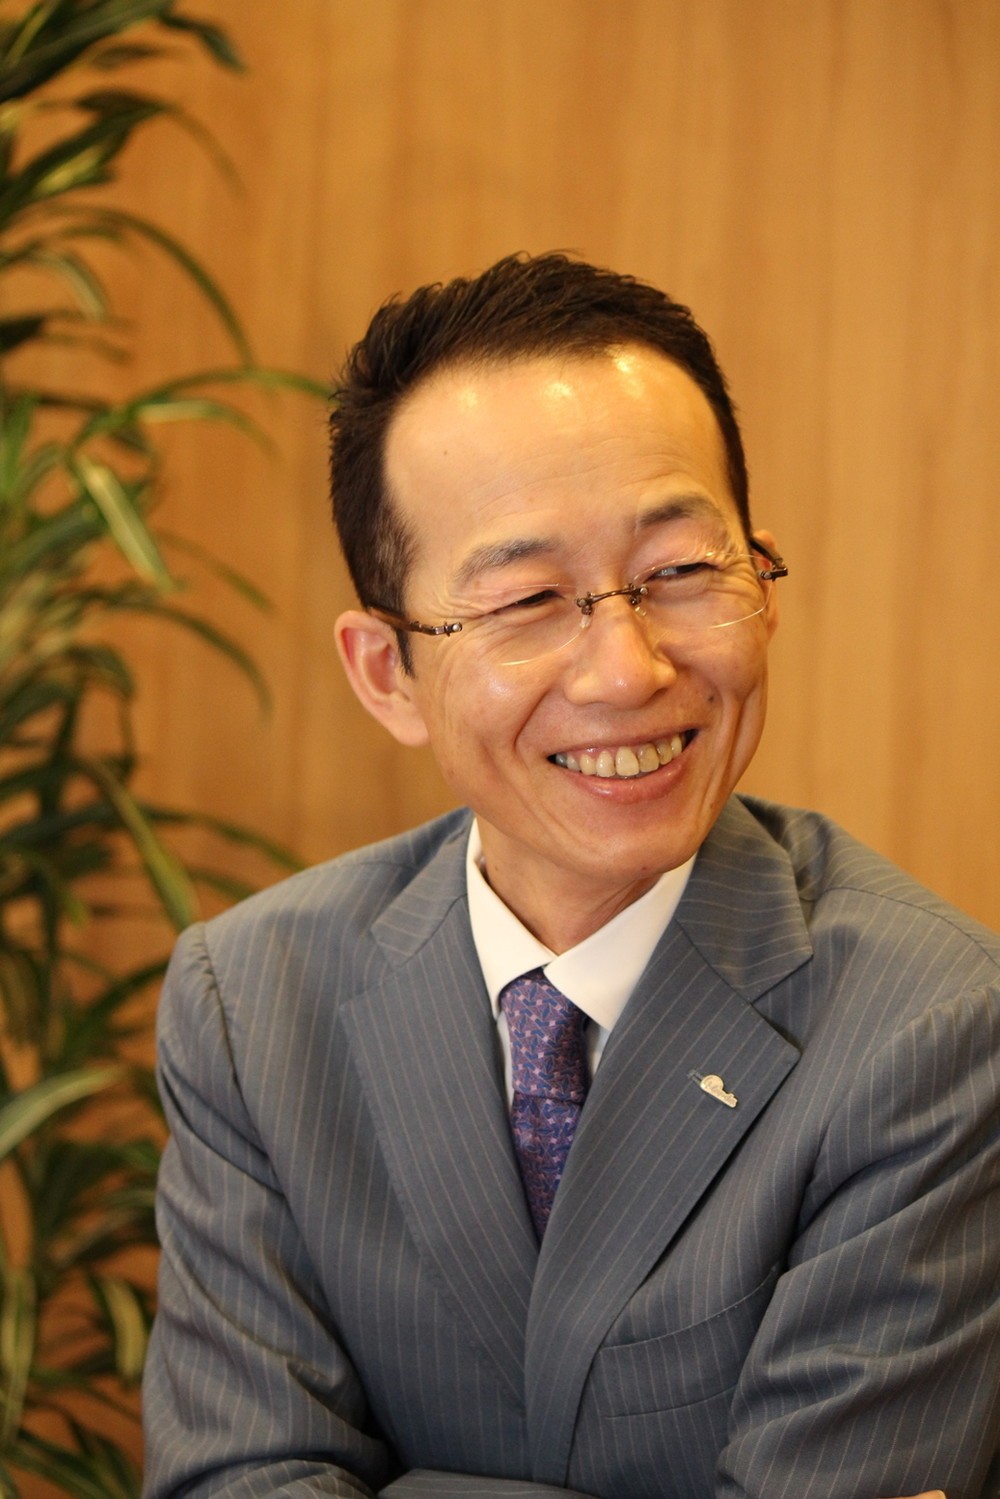 万田発酵の松浦良紀社長は2か月に1度、必ずミャンマーを訪れるという。